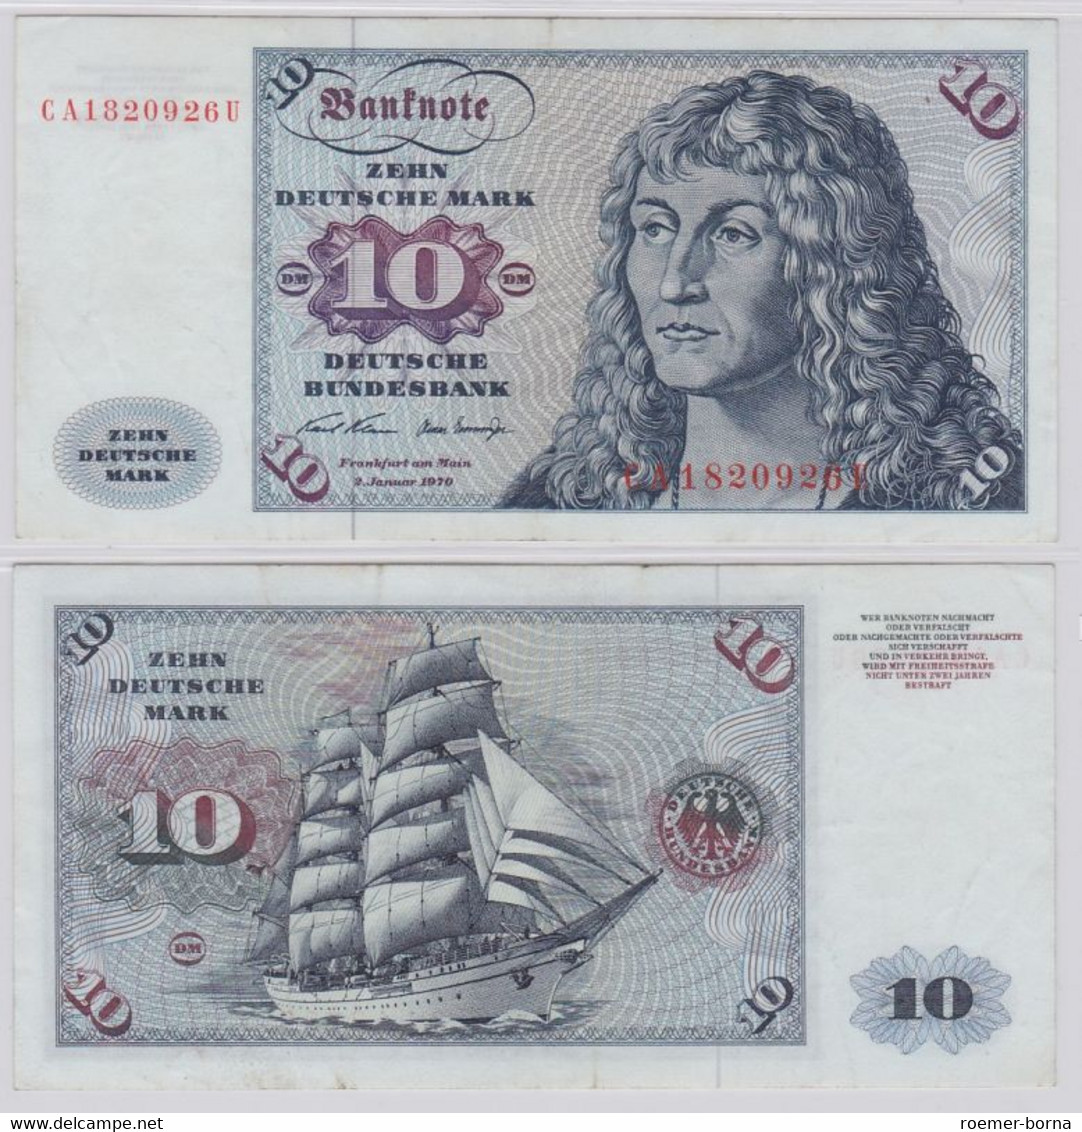 T146376 Banknote 10 DM Deutsche Mark Ro. 270a Schein 2.Jan. 1970 KN CA 1820926 U - 10 DM